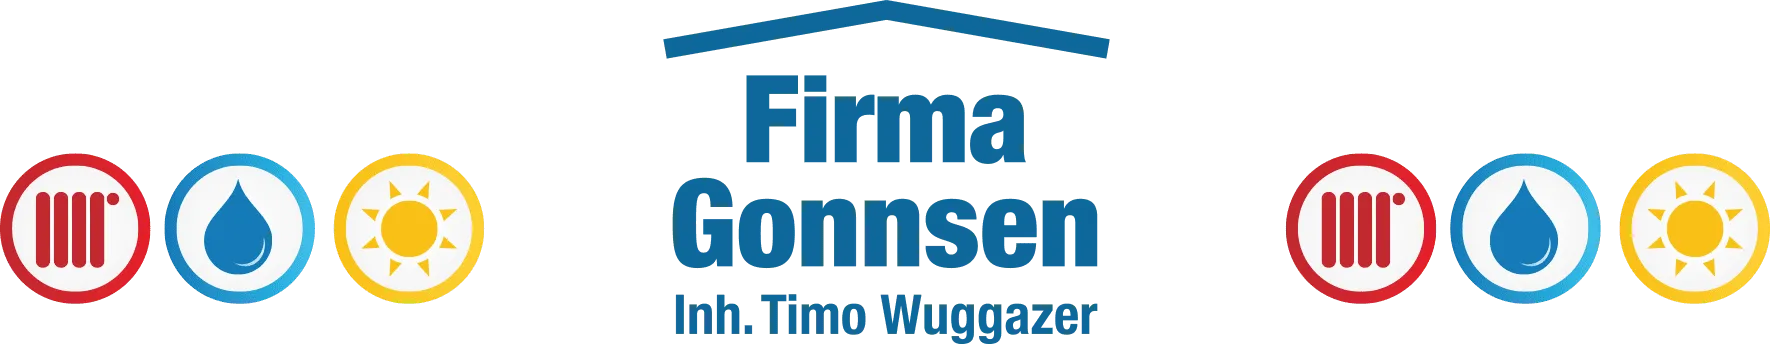 Gonnsen_Logo.png